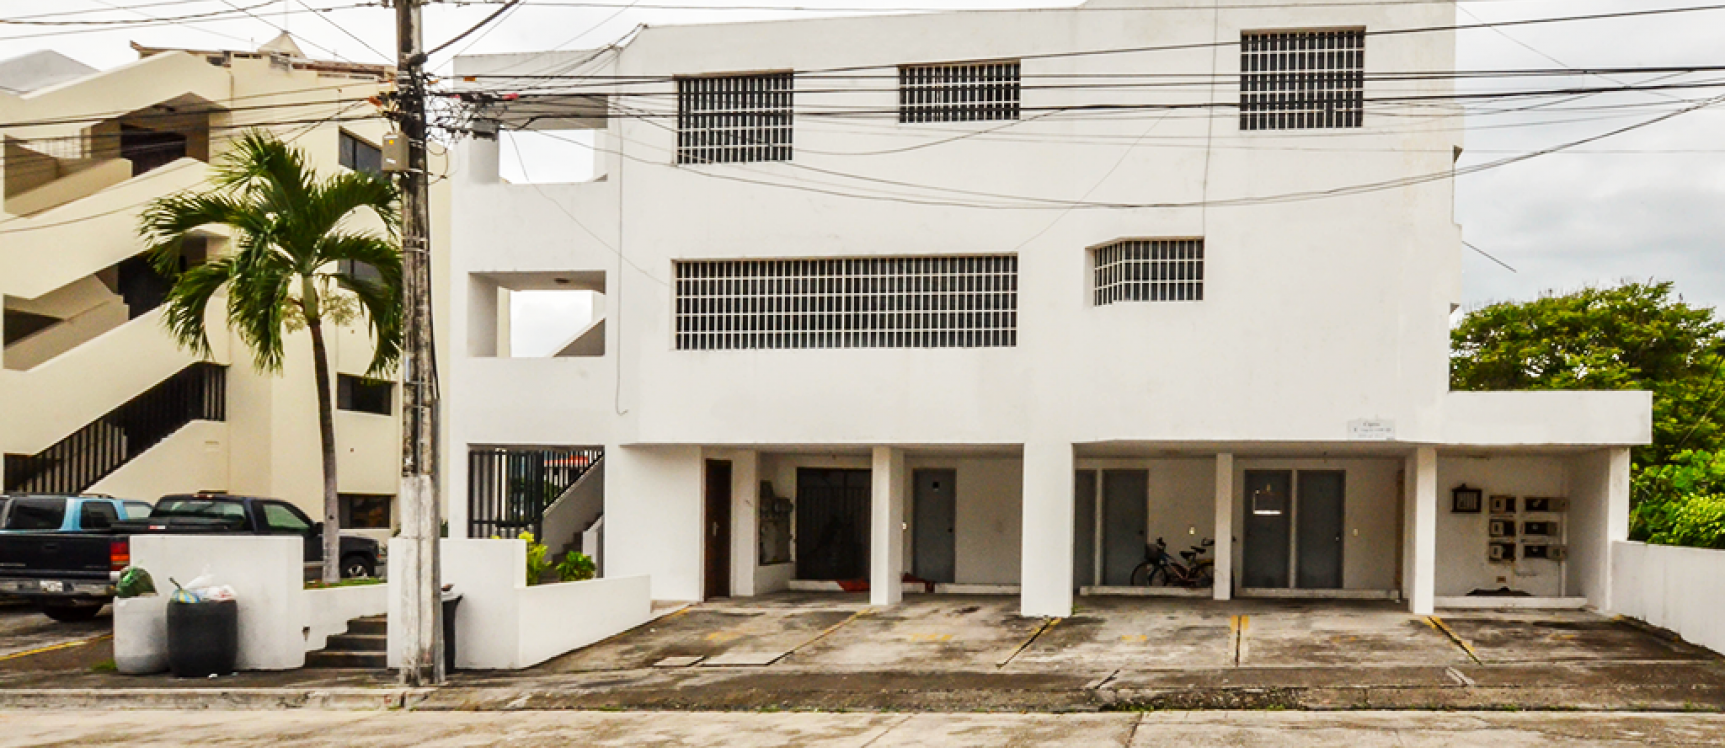 GeoBienes - Departamento en Venta en Ceibos Norte sector Vía a la Costa Guayaquil - Plusvalia Guayaquil Casas de venta y alquiler Inmobiliaria Ecuador